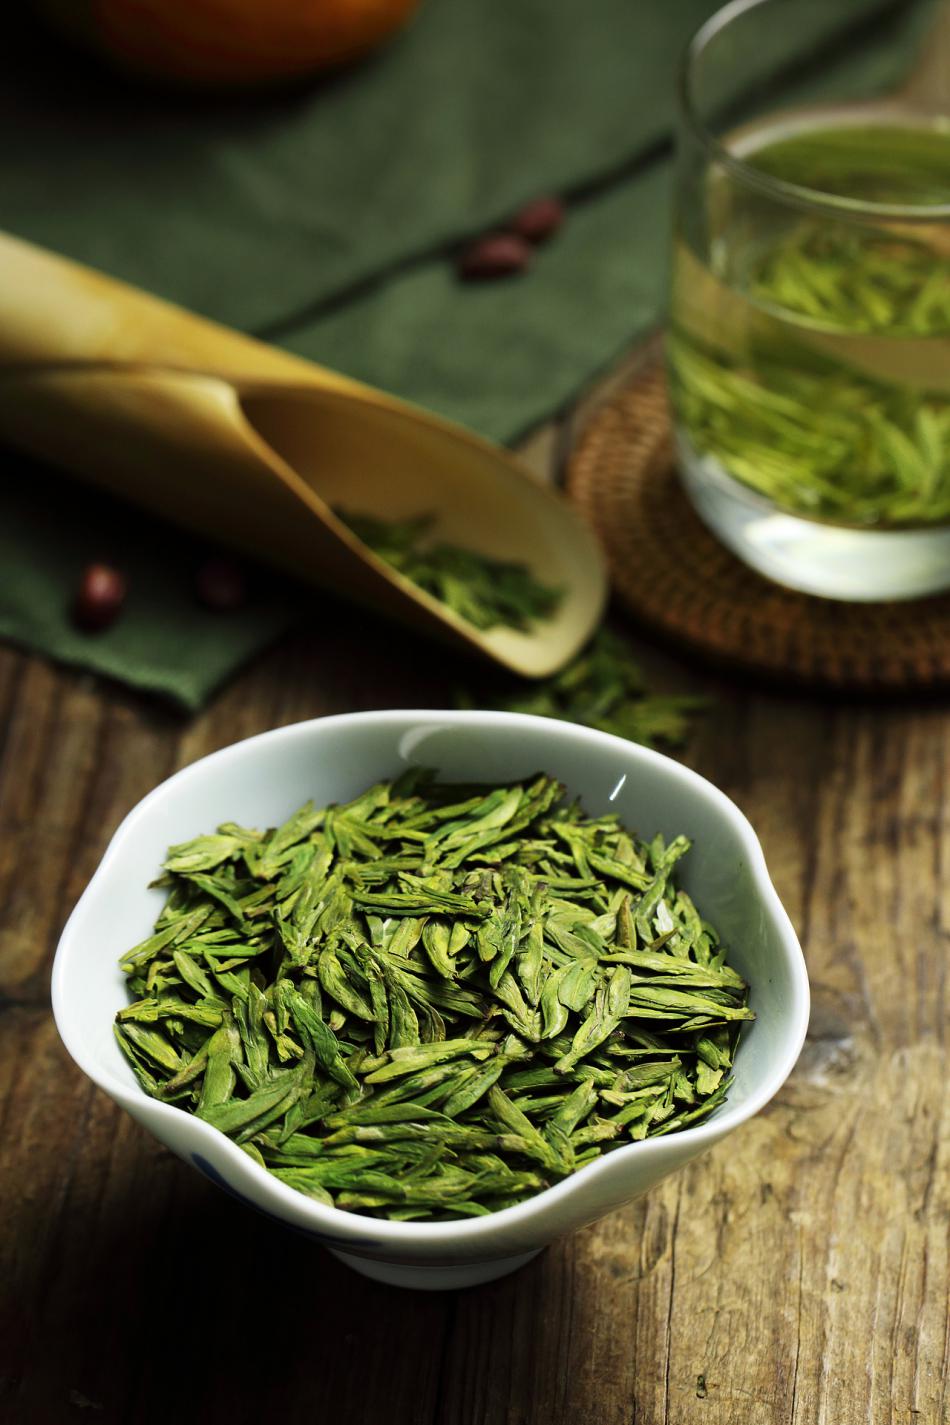 炒青绿茶品质特征是具有锅炒的高香